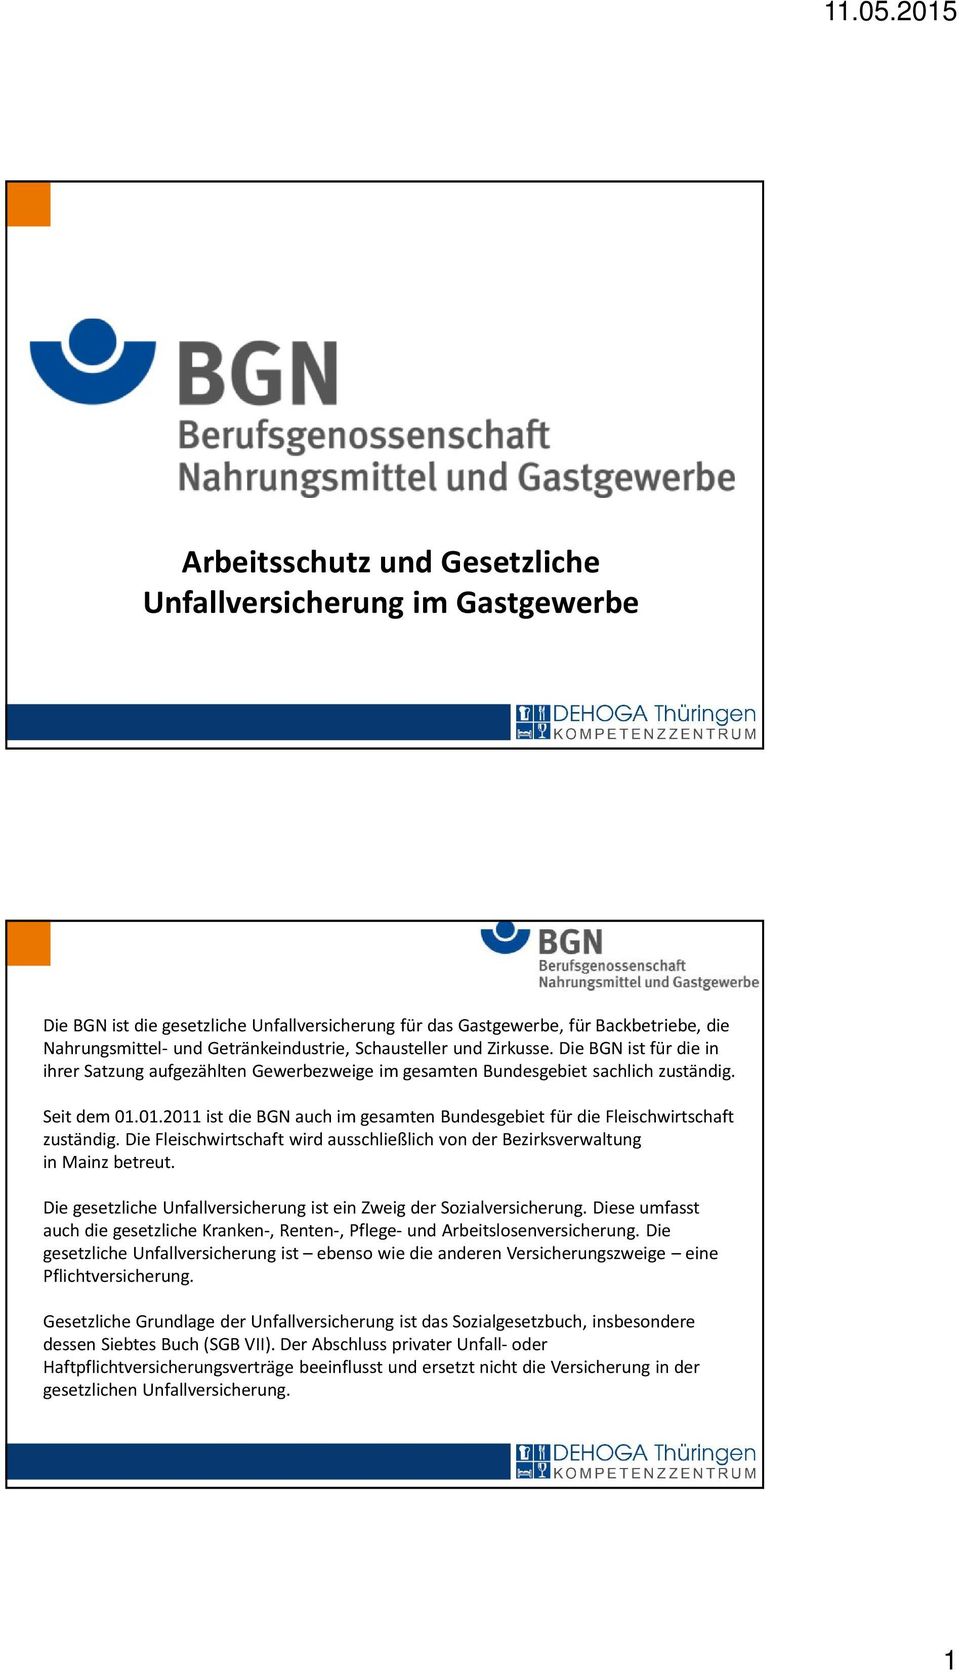 01.2011 ist die BGN auch im gesamten Bundesgebiet für die Fleischwirtschaft zuständig. Die Fleischwirtschaft wird ausschließlich von der Bezirksverwaltung in Mainz betreut.